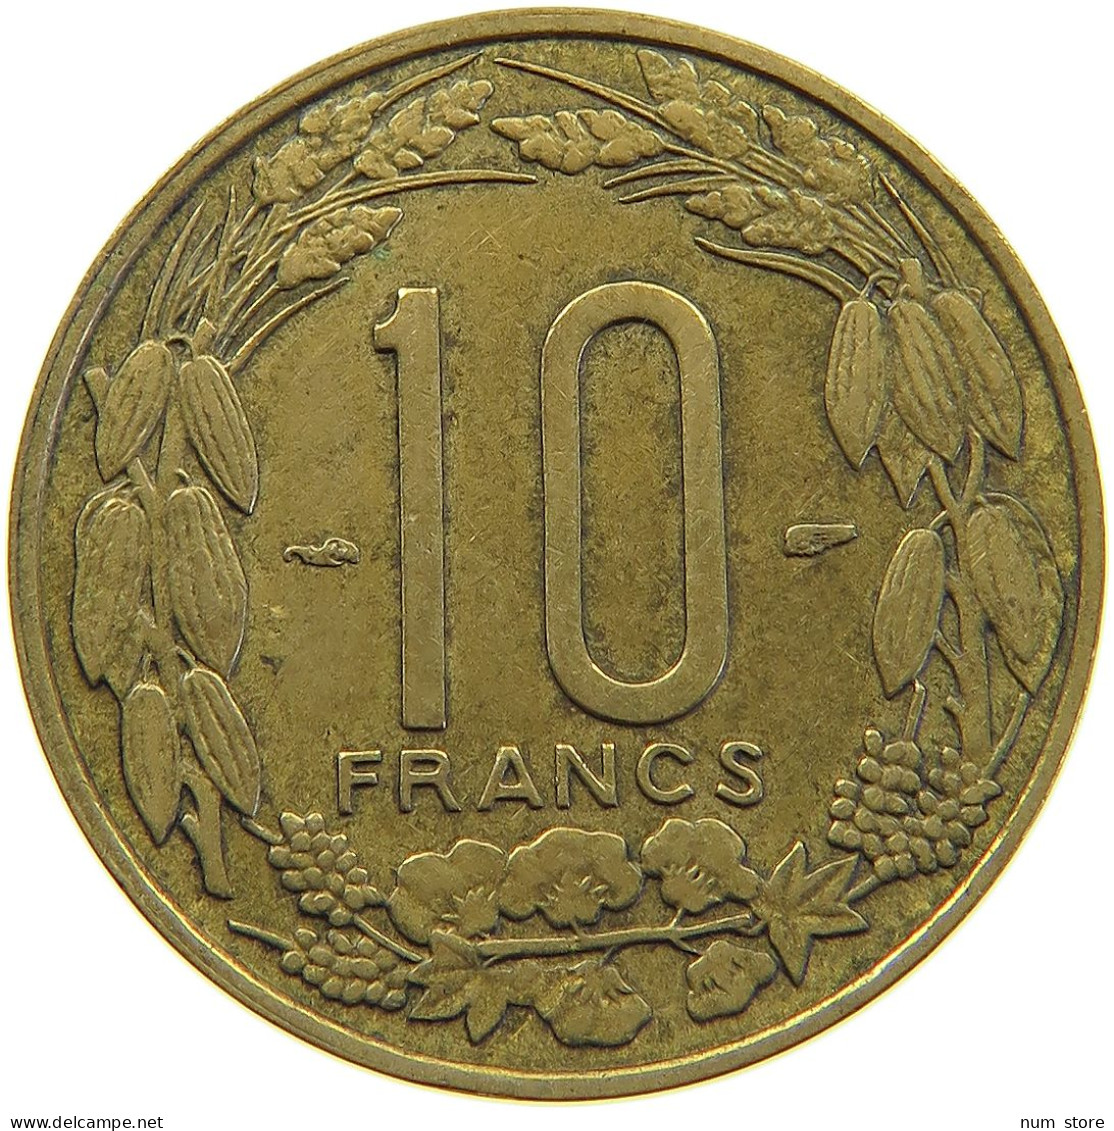 CAMEROON 10 FRANCS 1958  #c067 0365 - Cameroon